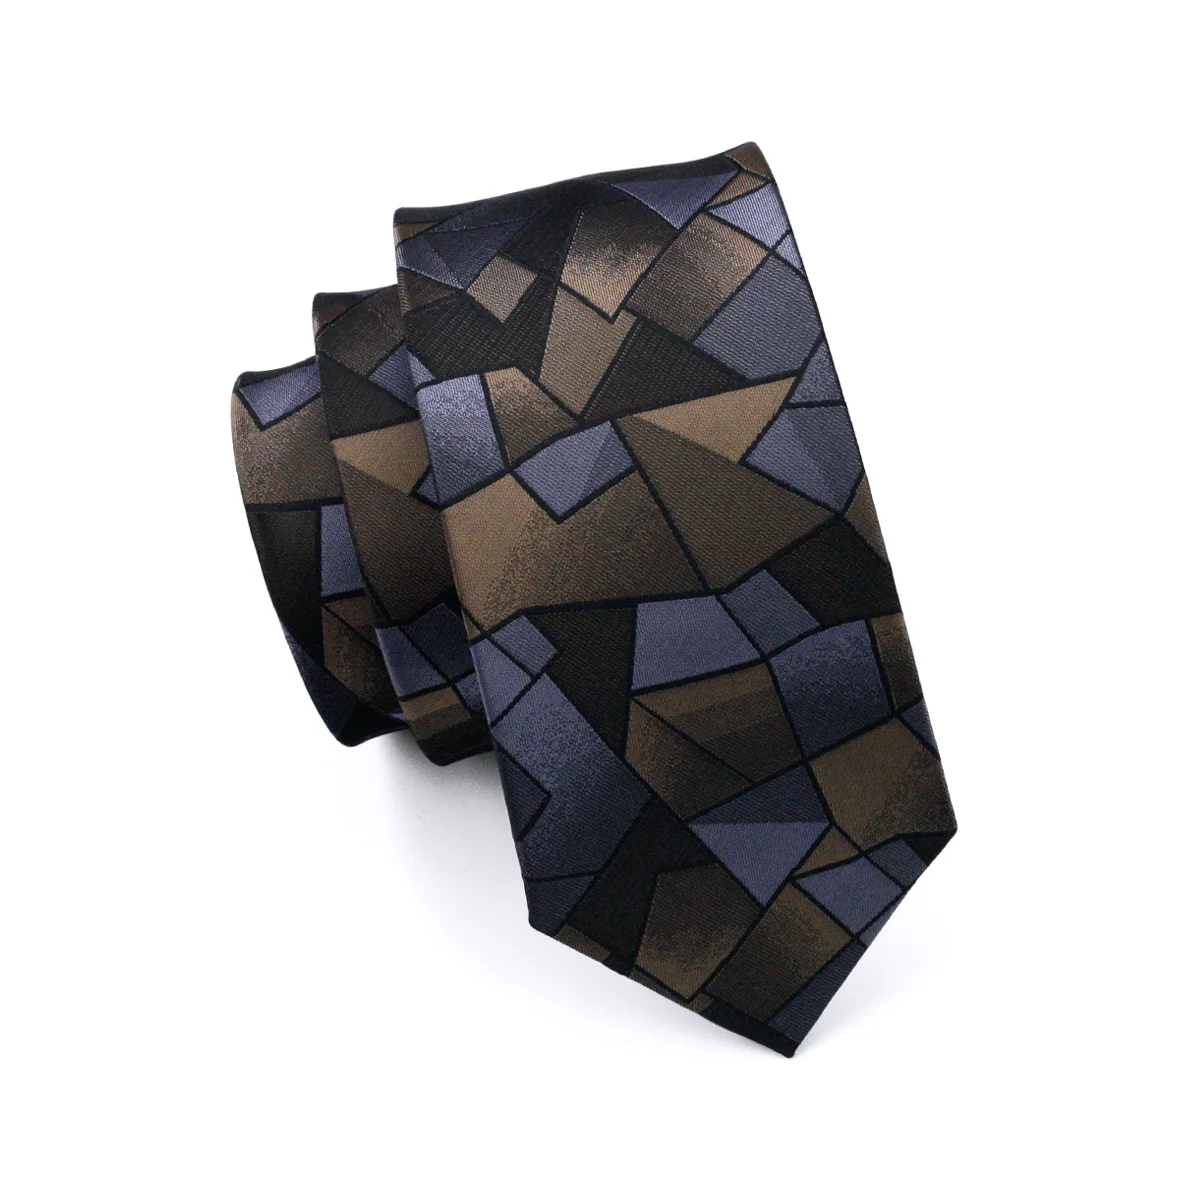 Dh-980 Для мужчин S Галстук коричневый новинка галстук шелк жаккард Галстуки для Для мужчин Бизнес Свадебная нарядная одежда, Бесплатная